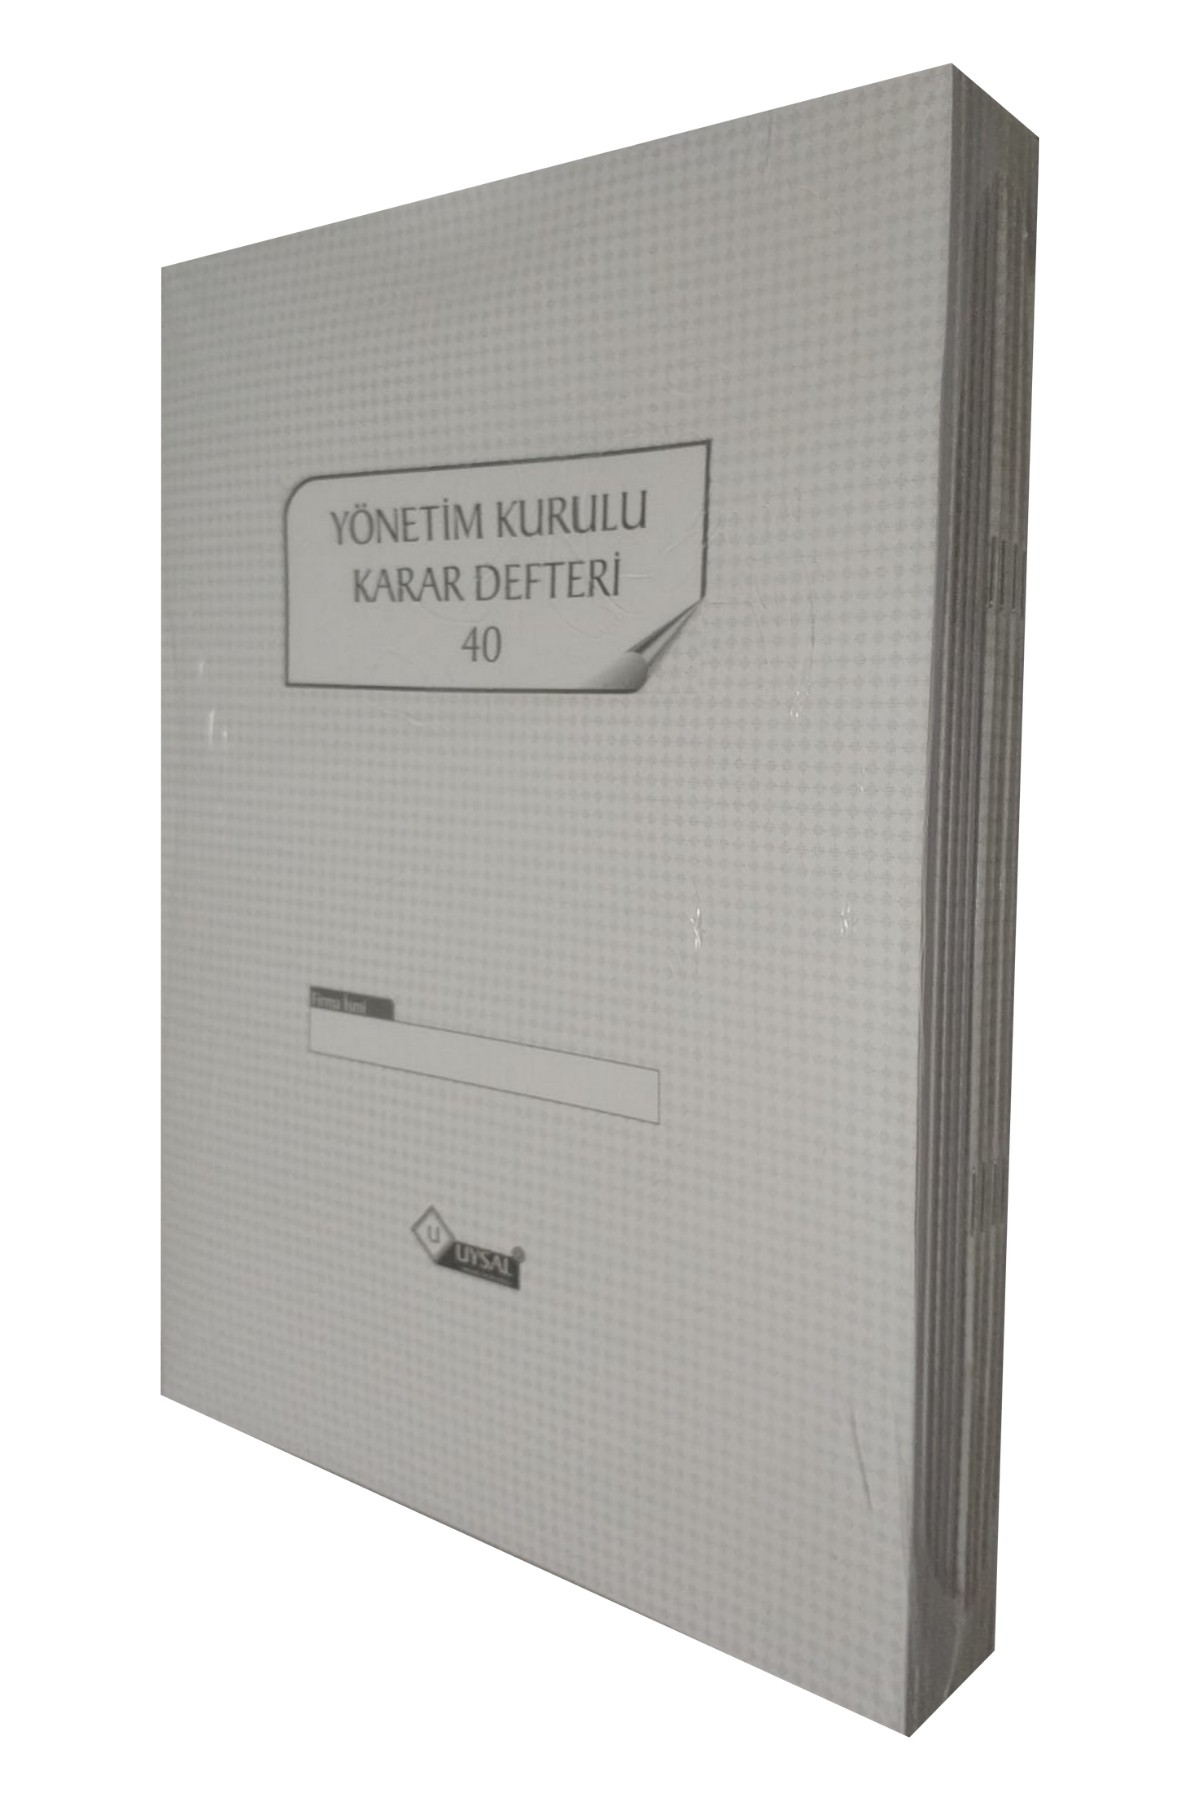 UYSAL Yönetim Kurulu Karar Defteri 40 Yaprak(80 SAYFA) Numaralı 10 Lu Paket